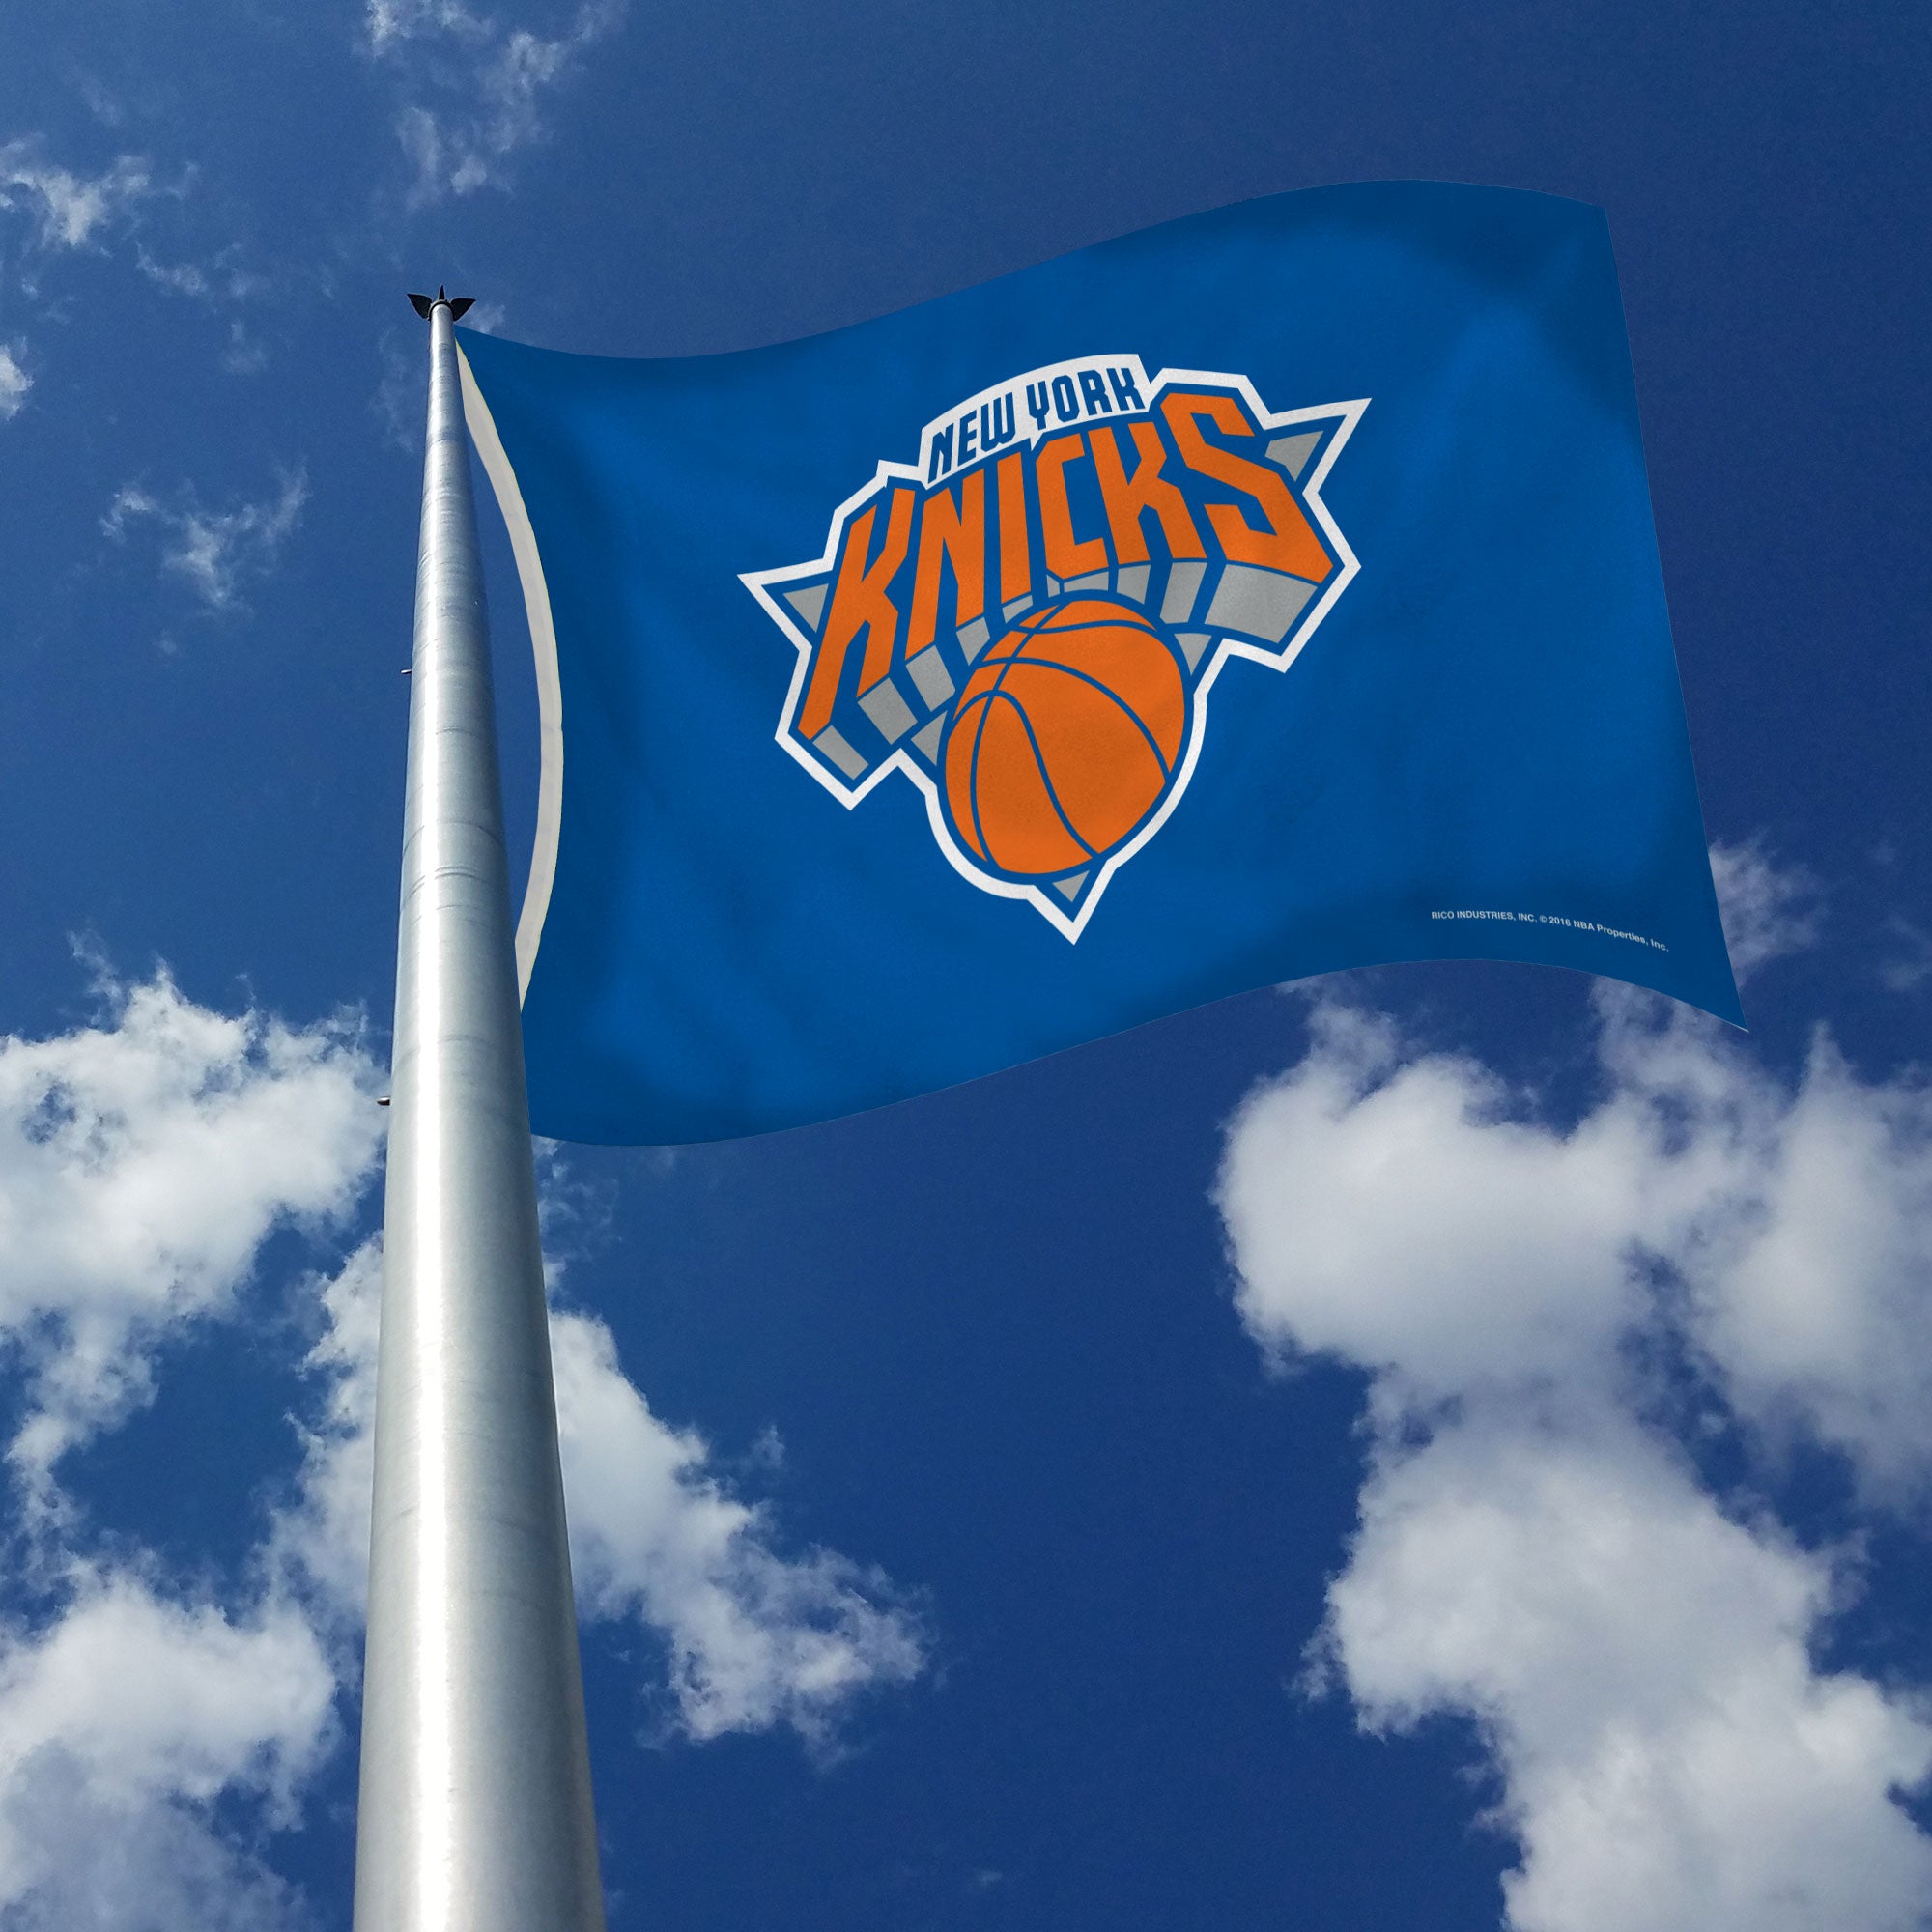 New York Knicks NY Flag / Banner 5 X 3 Ft (150 x 90 cm) - Flags